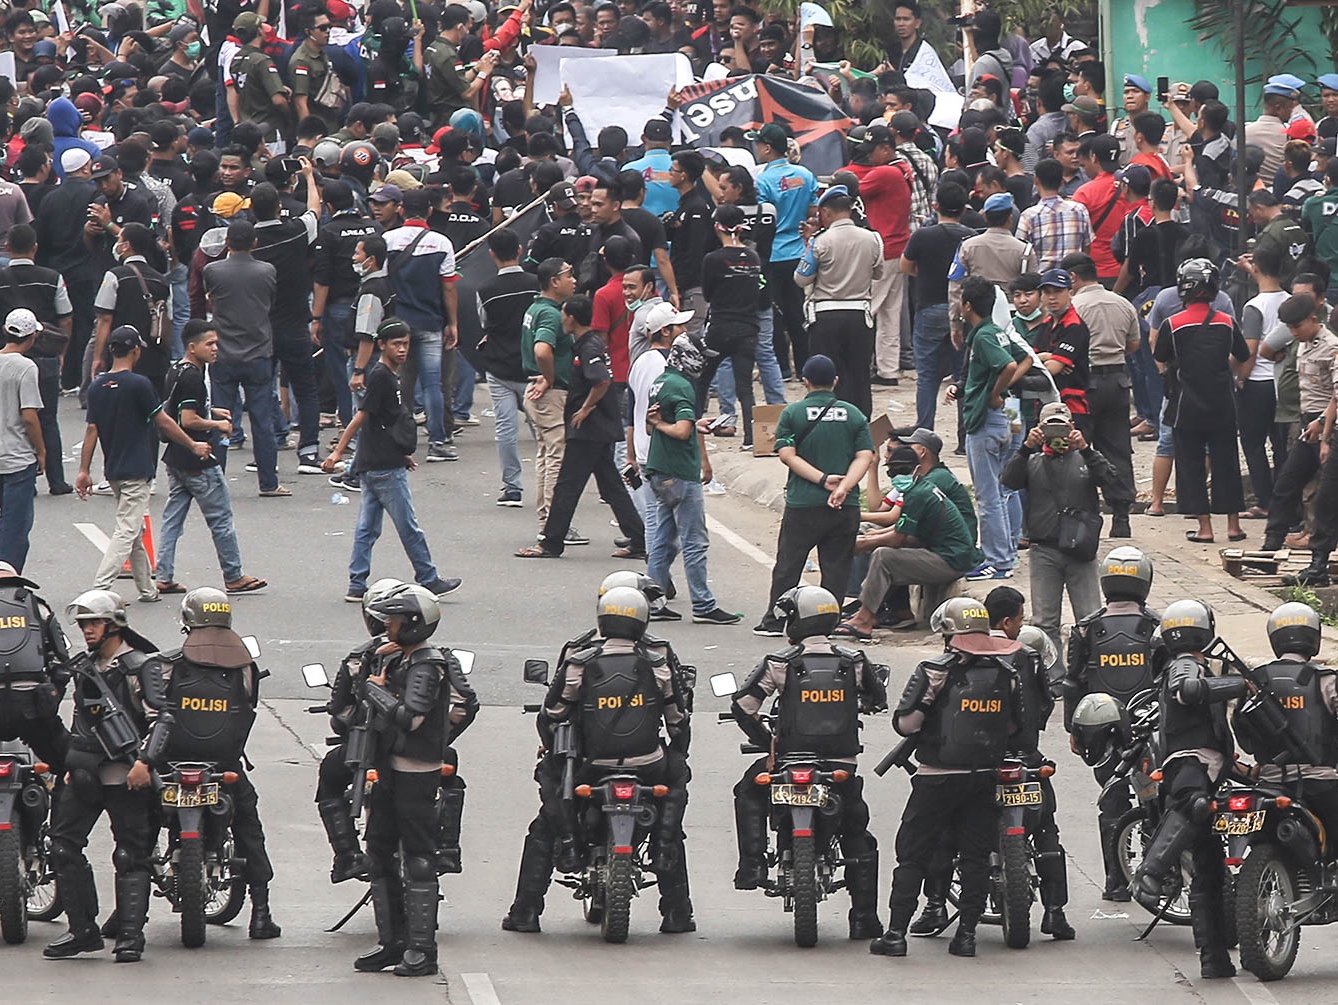   Polisi Tangkap 499 Orang Diduga Ingin Demonstrasi  